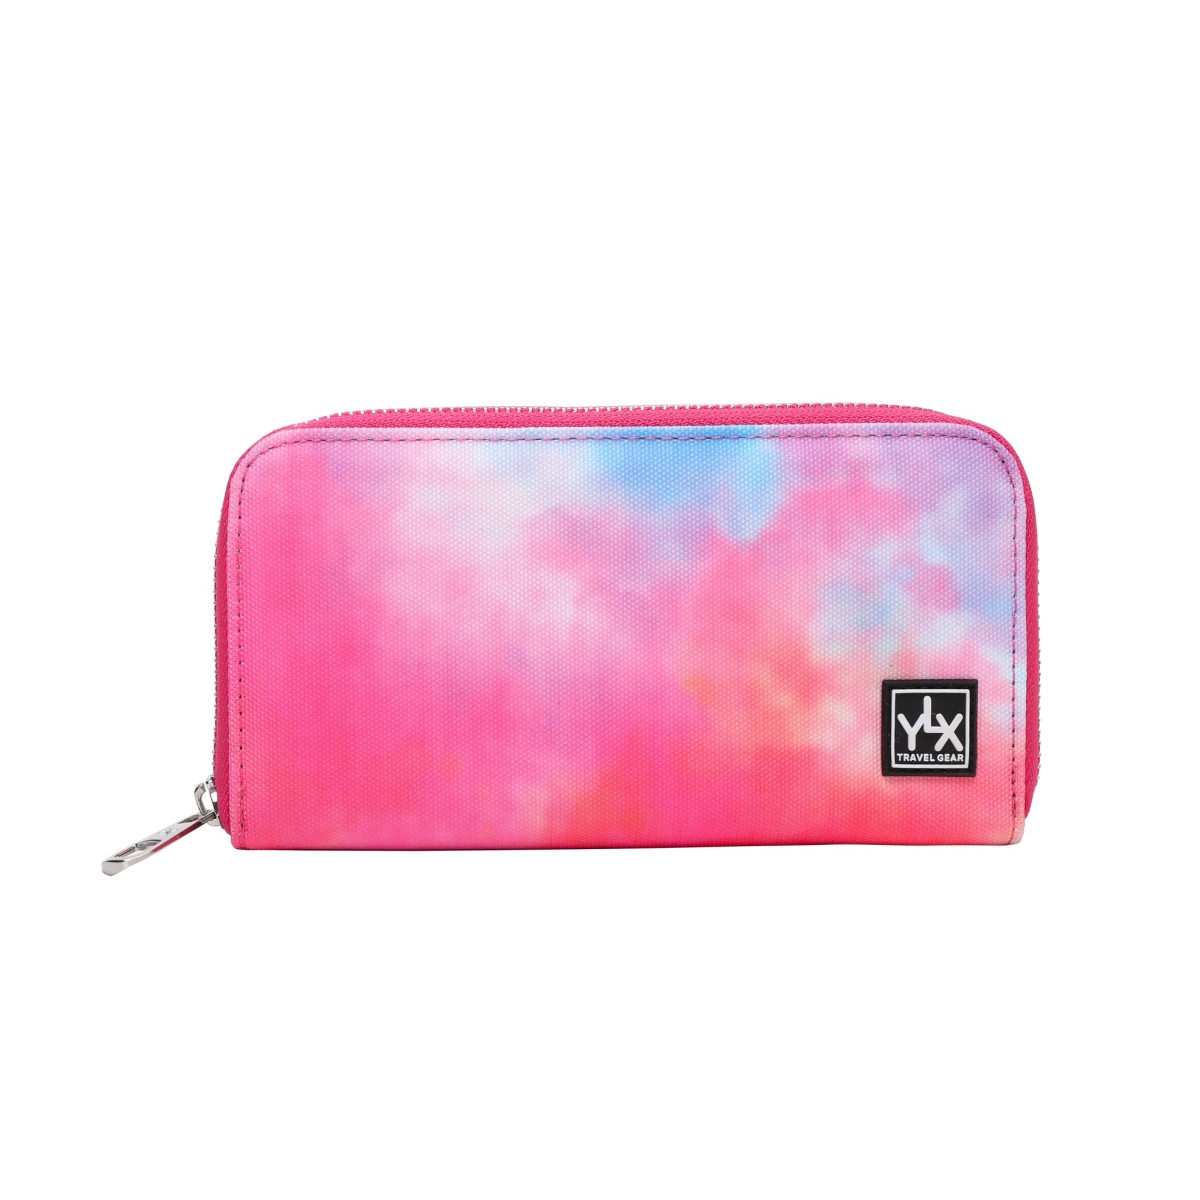 YLX Koa wallet | Tie Dye Pink